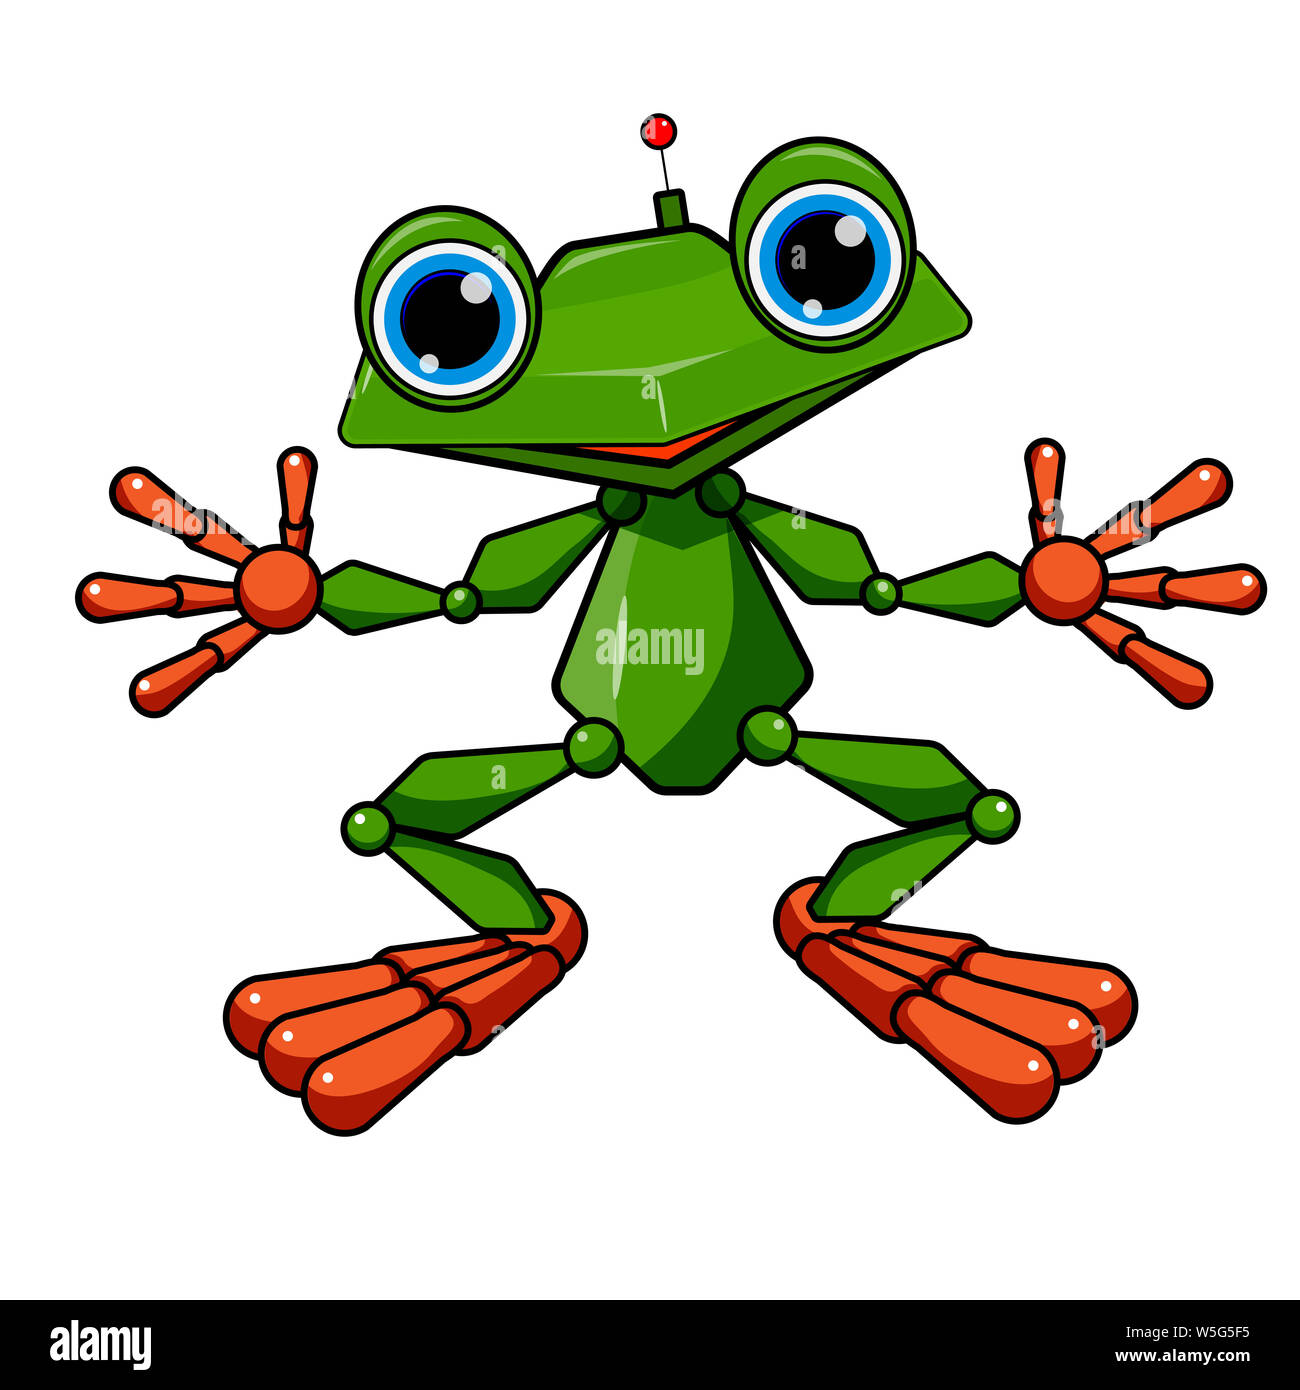 Lieferbar Abbildung: grüner Frosch Roboter auf weißem Hintergrund  Stockfotografie - Alamy